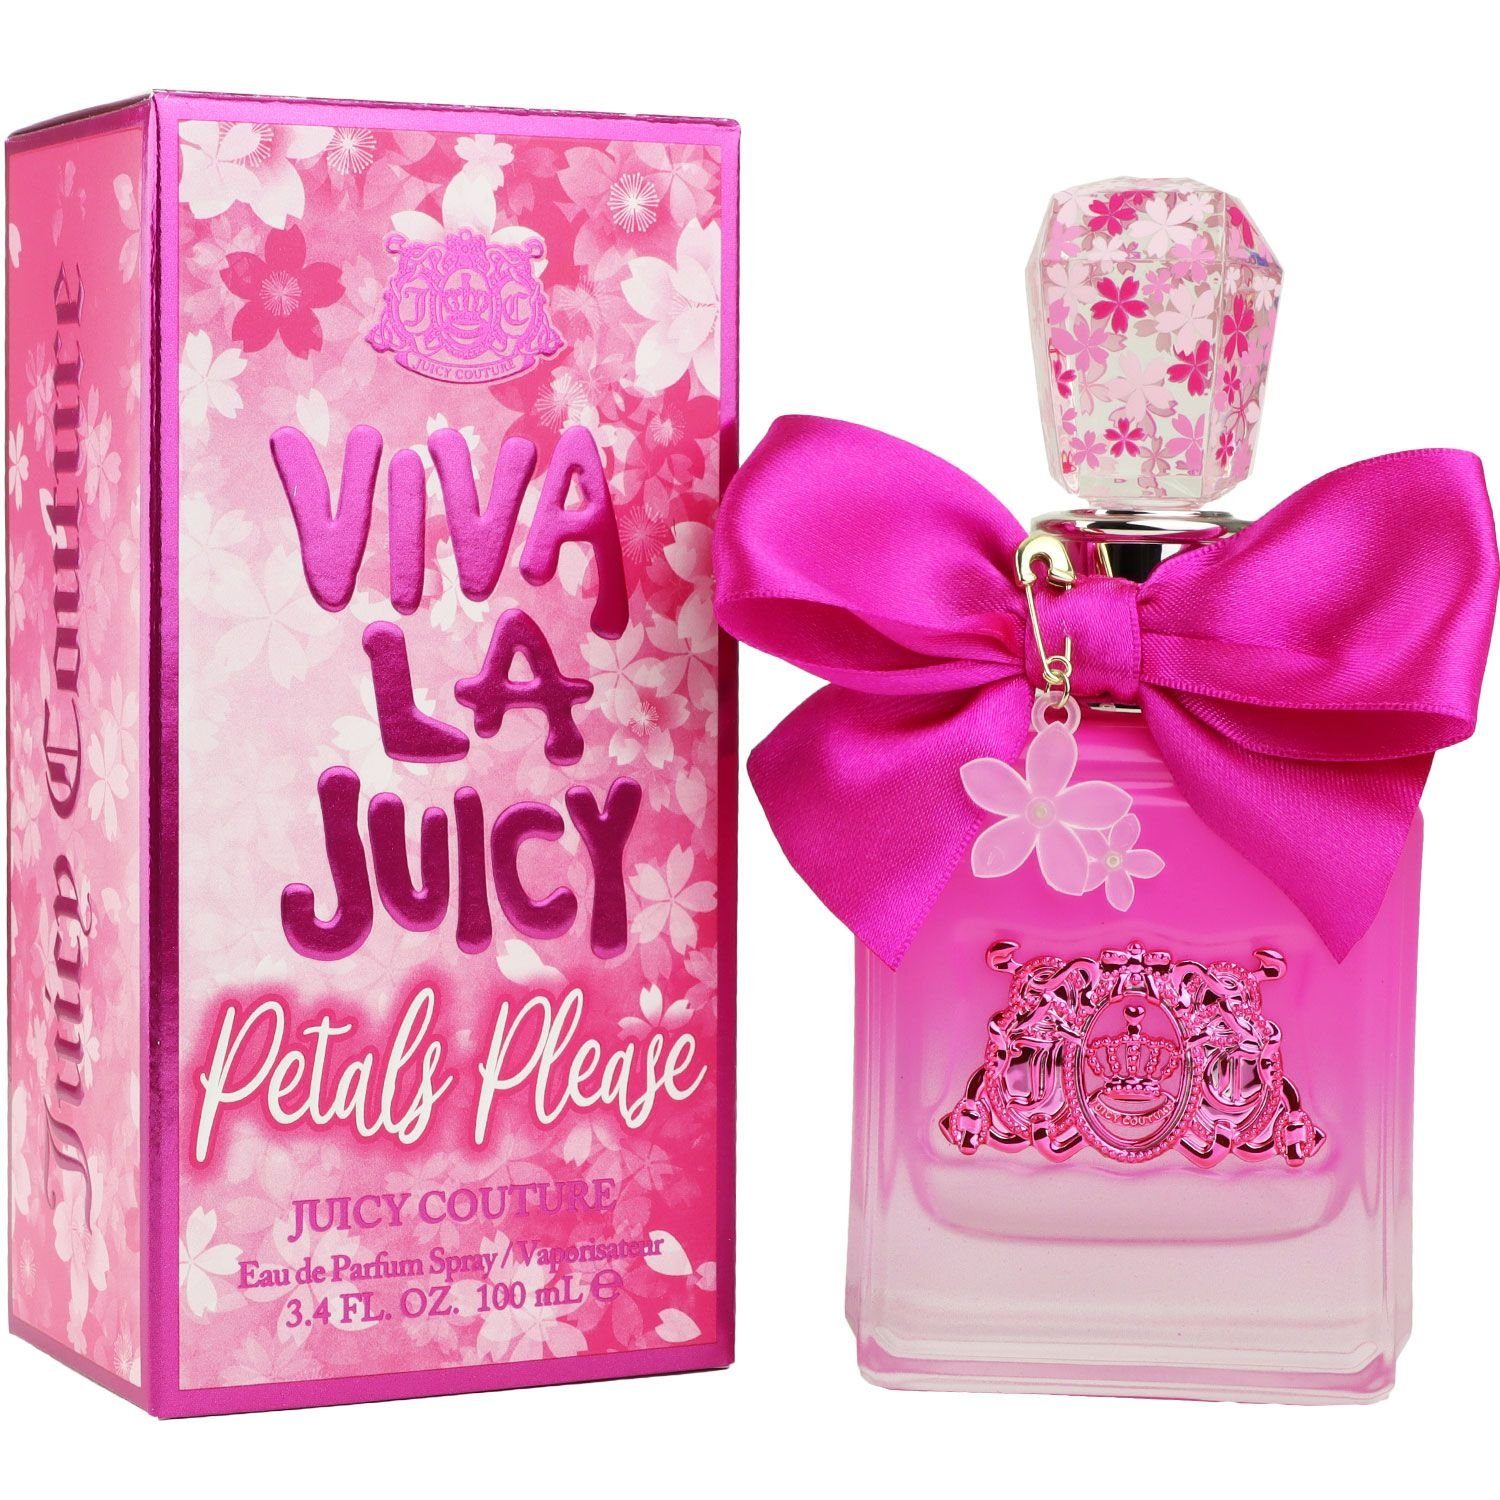 Juicy Couture Eau de Parfum Juicy ml La Petals Please 100 Viva